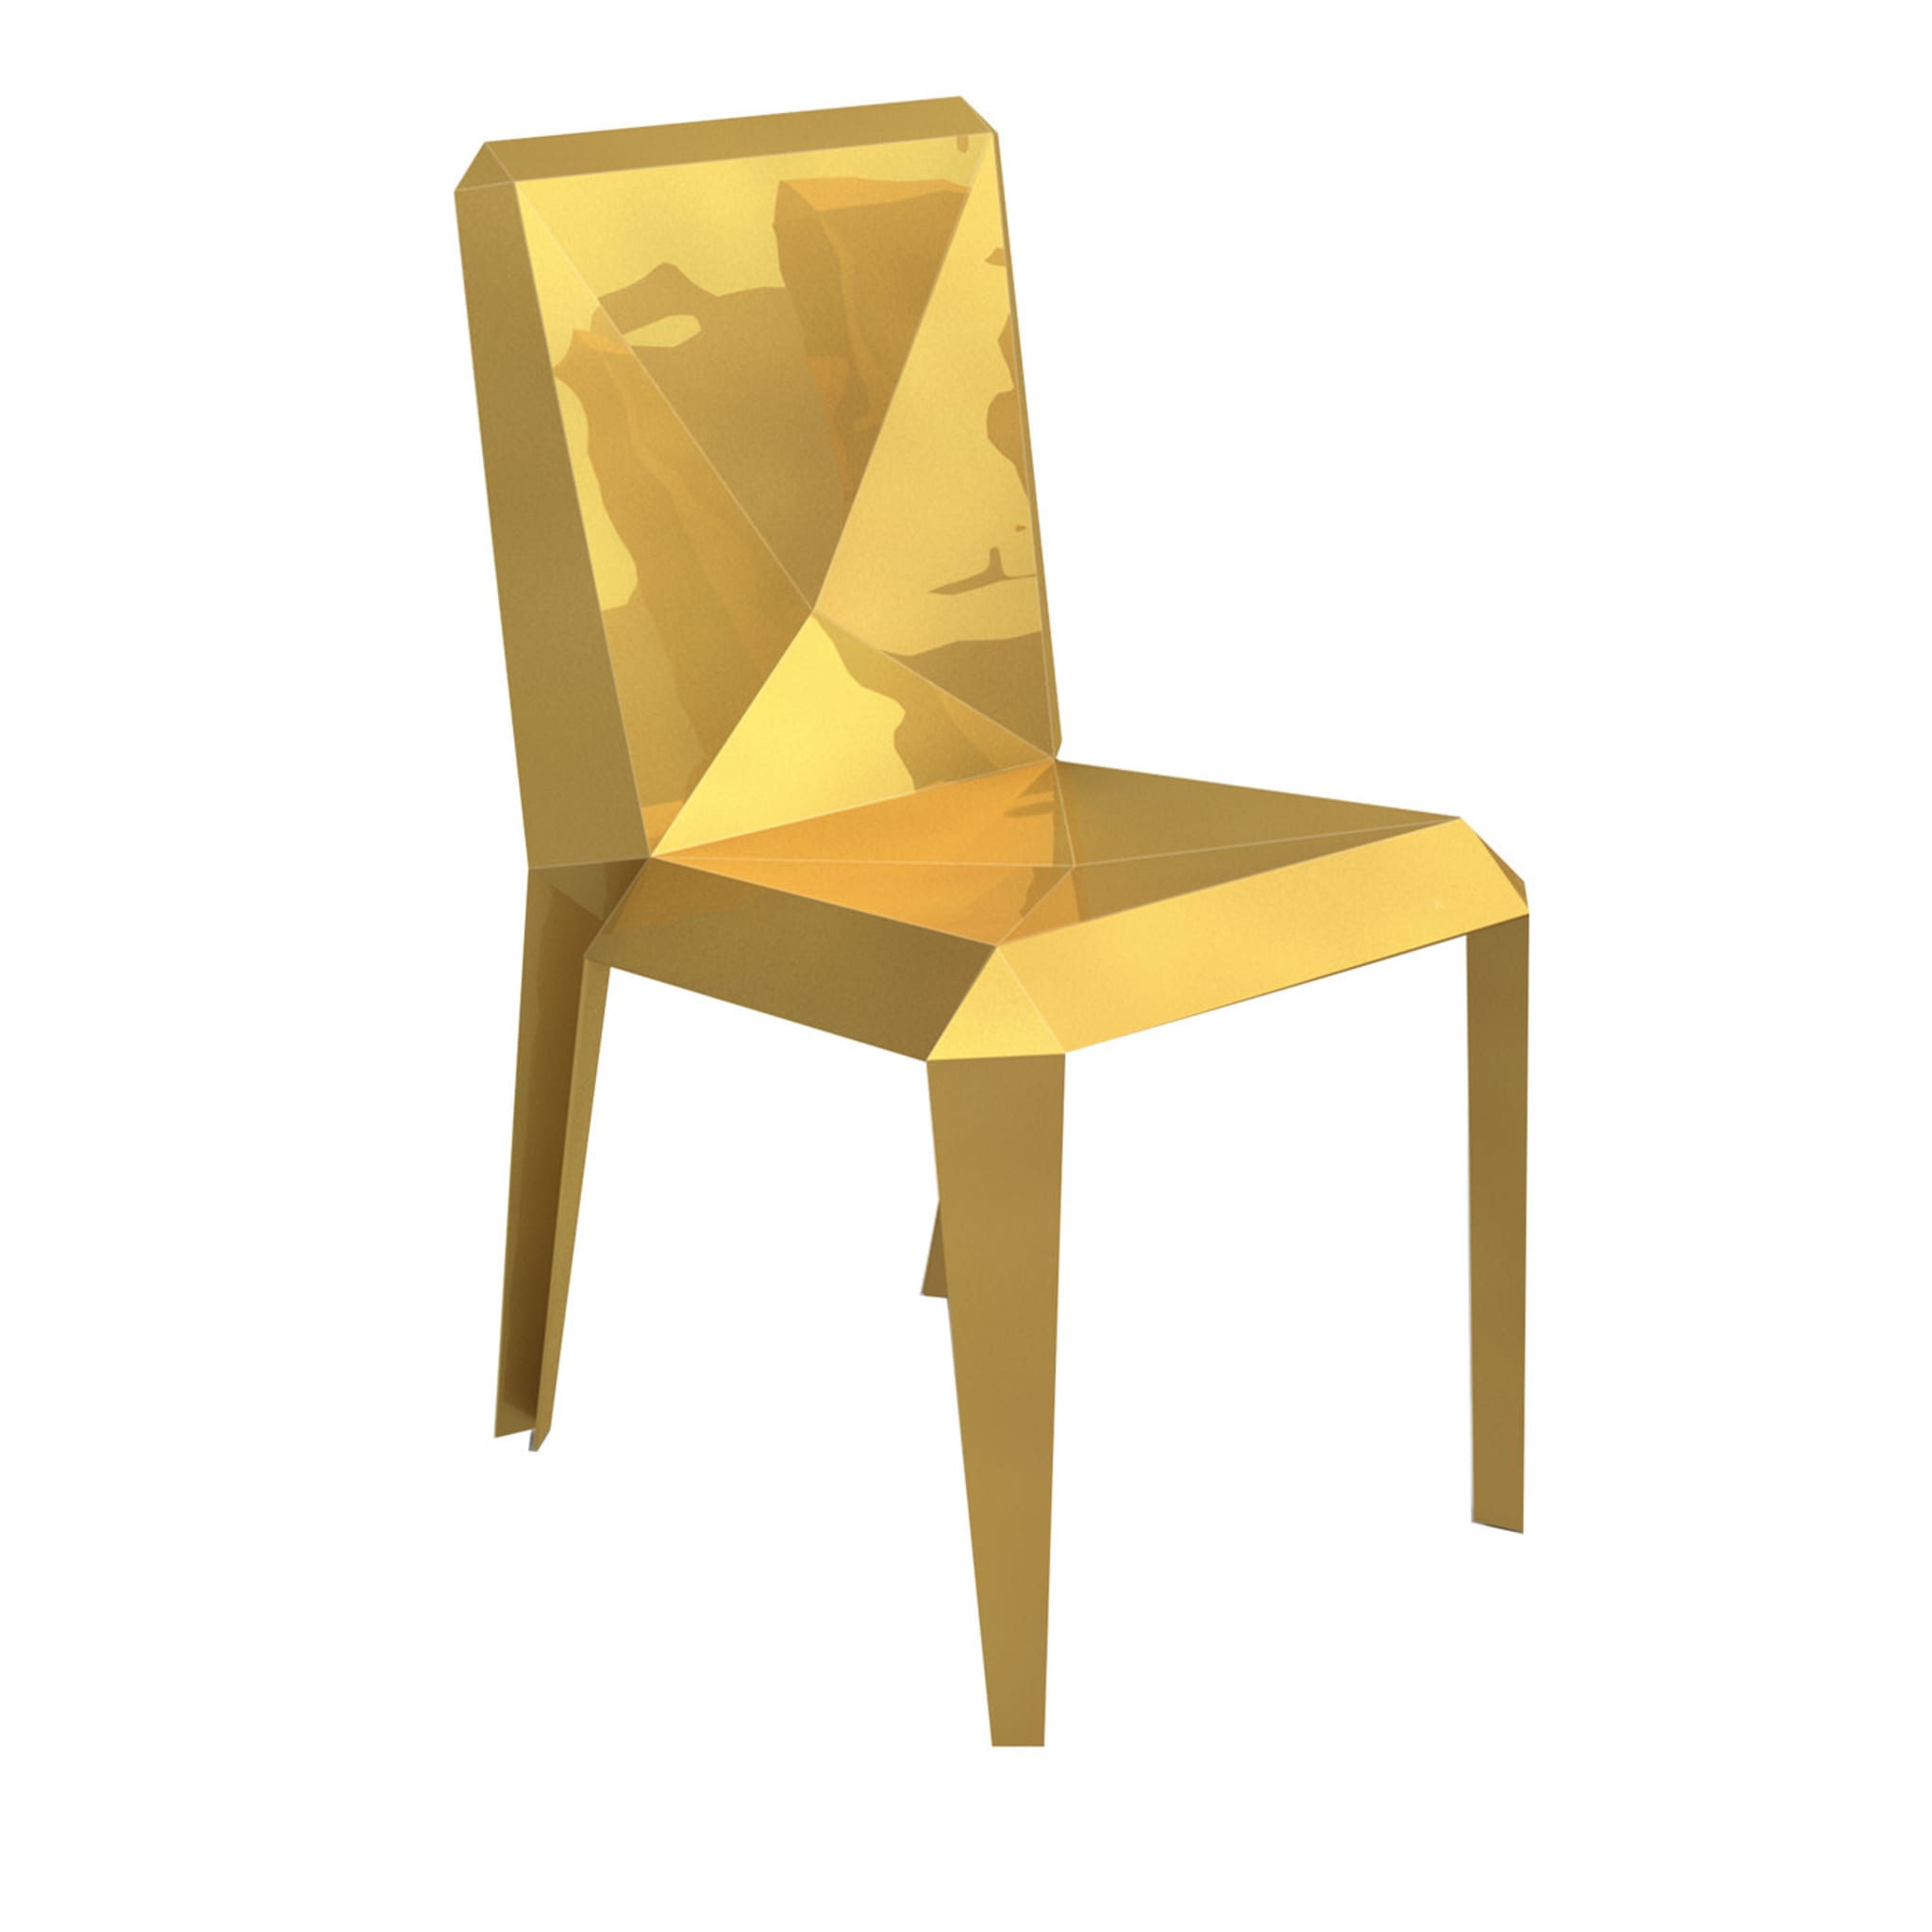 Lingotto Gold Stuhl von Garilab by Piter Perbellini - Hauptansicht